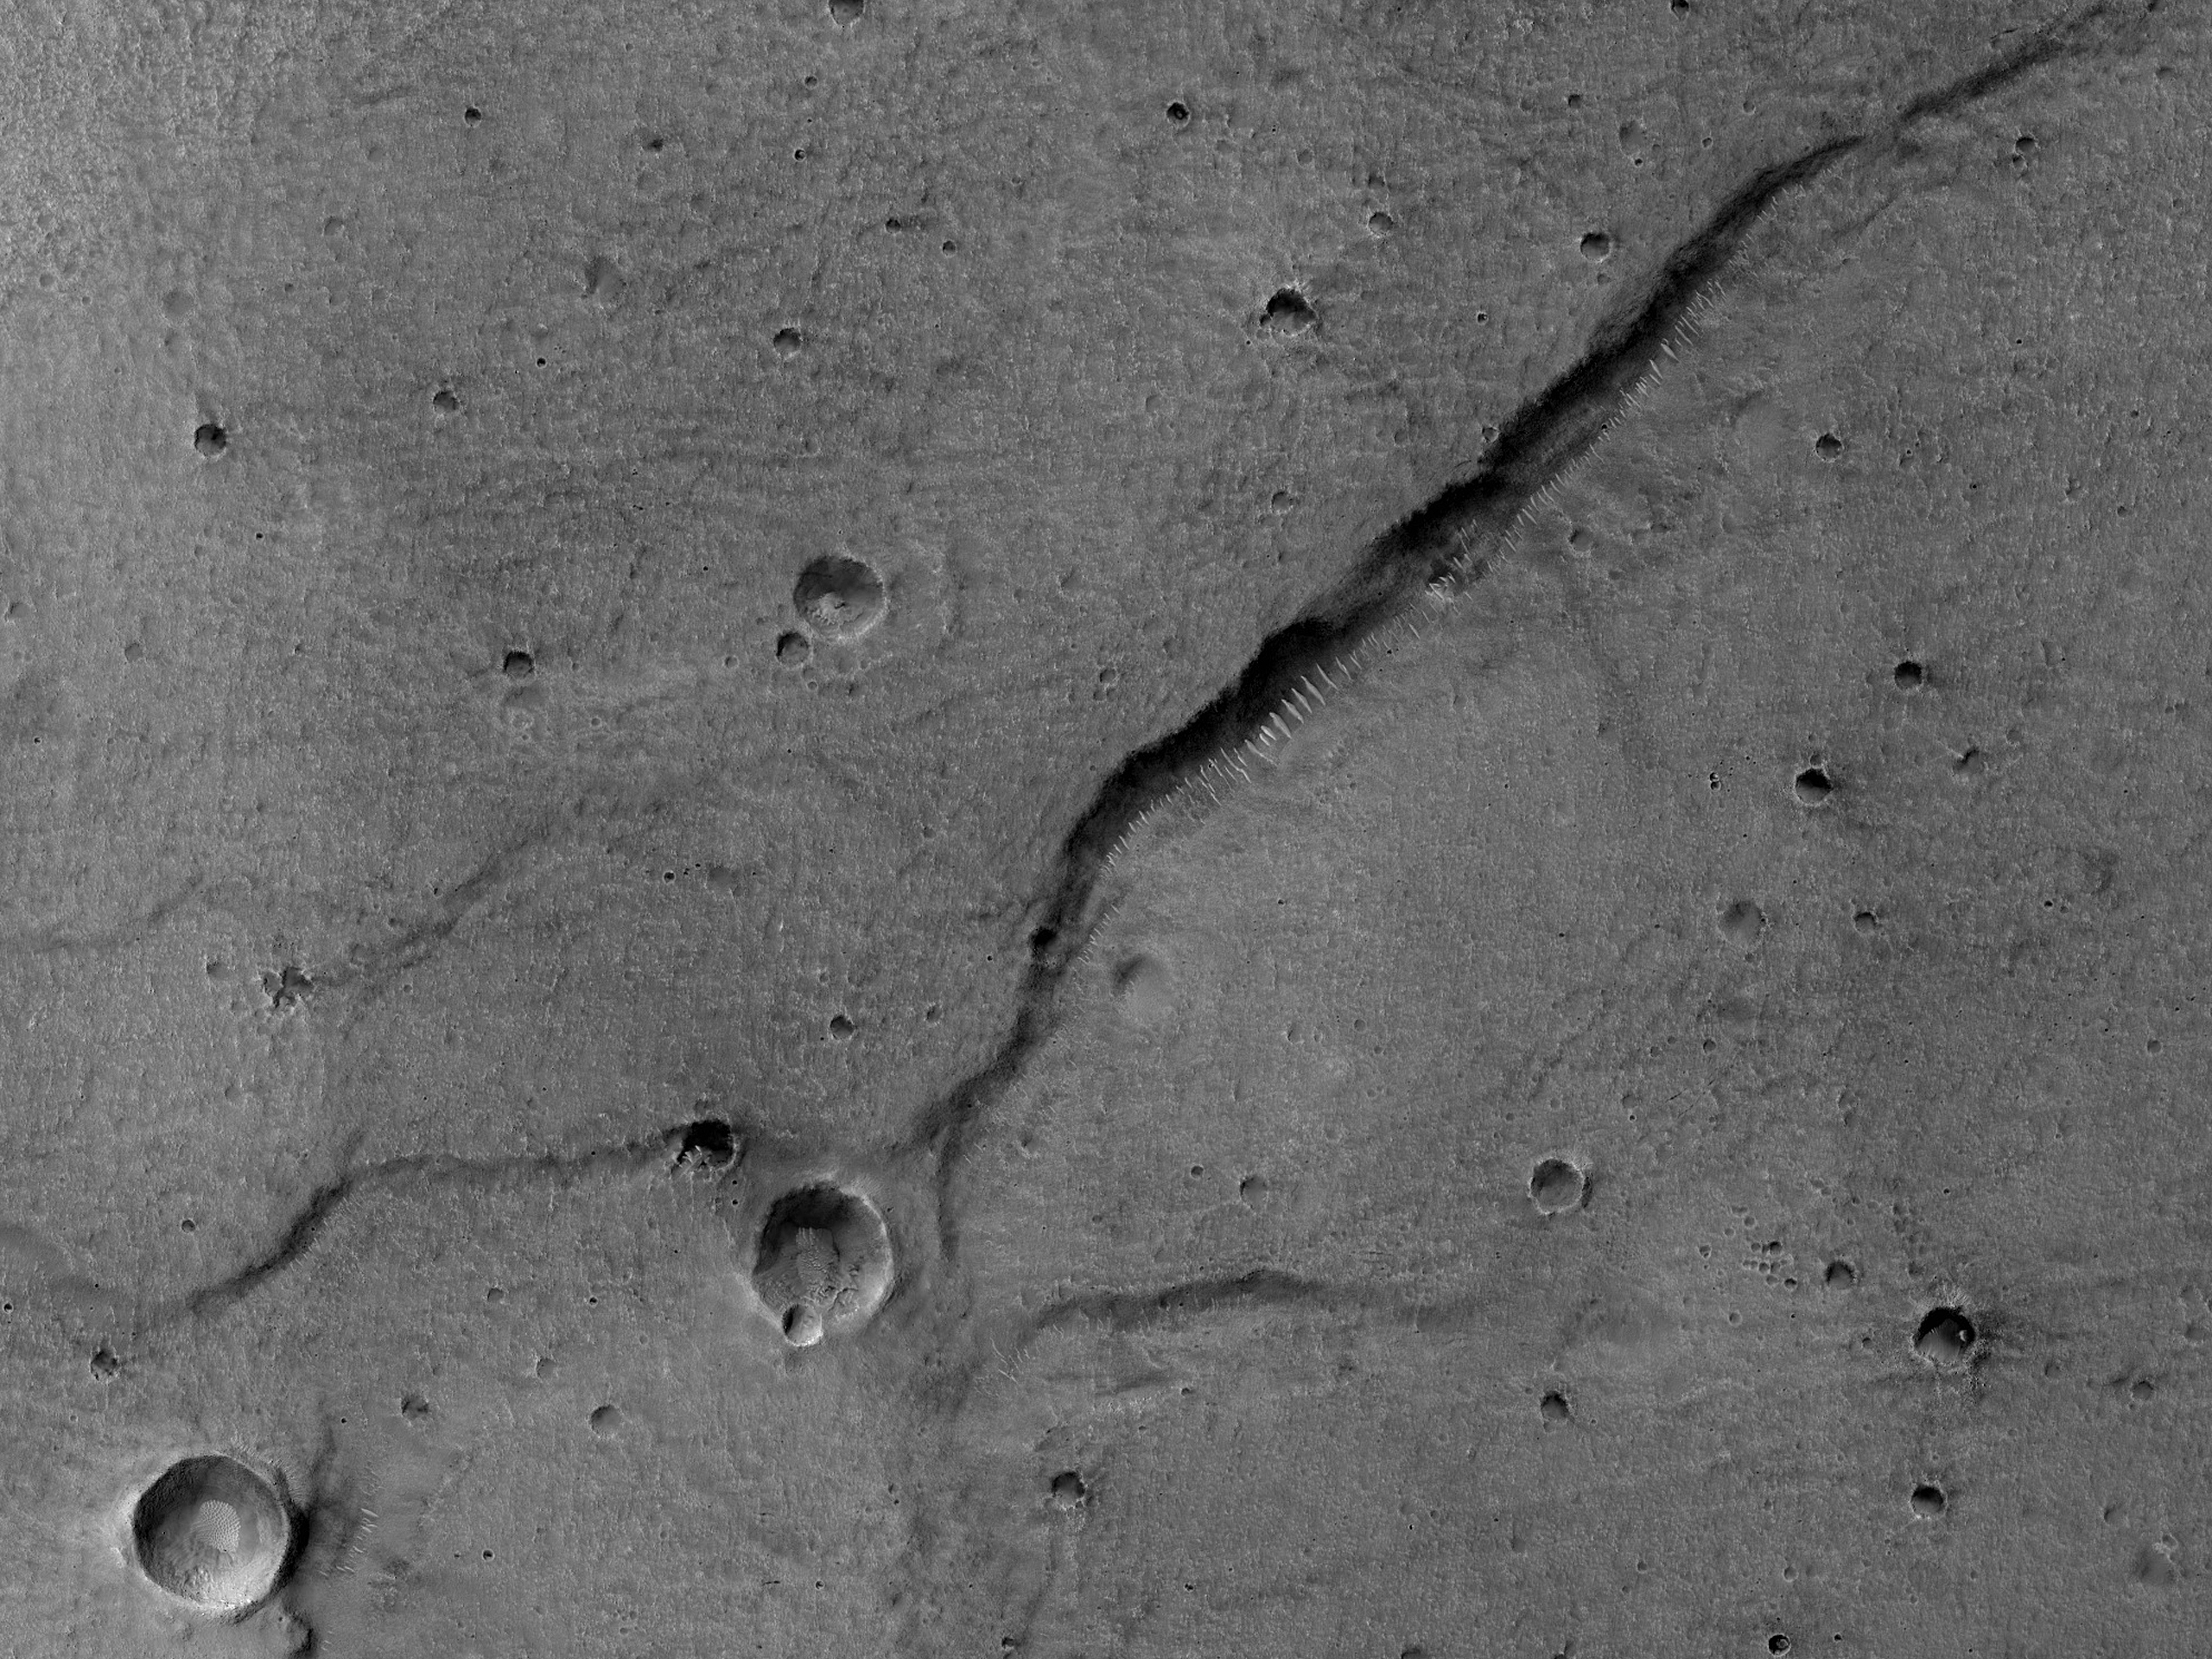 Fractures in Utopia Planitia